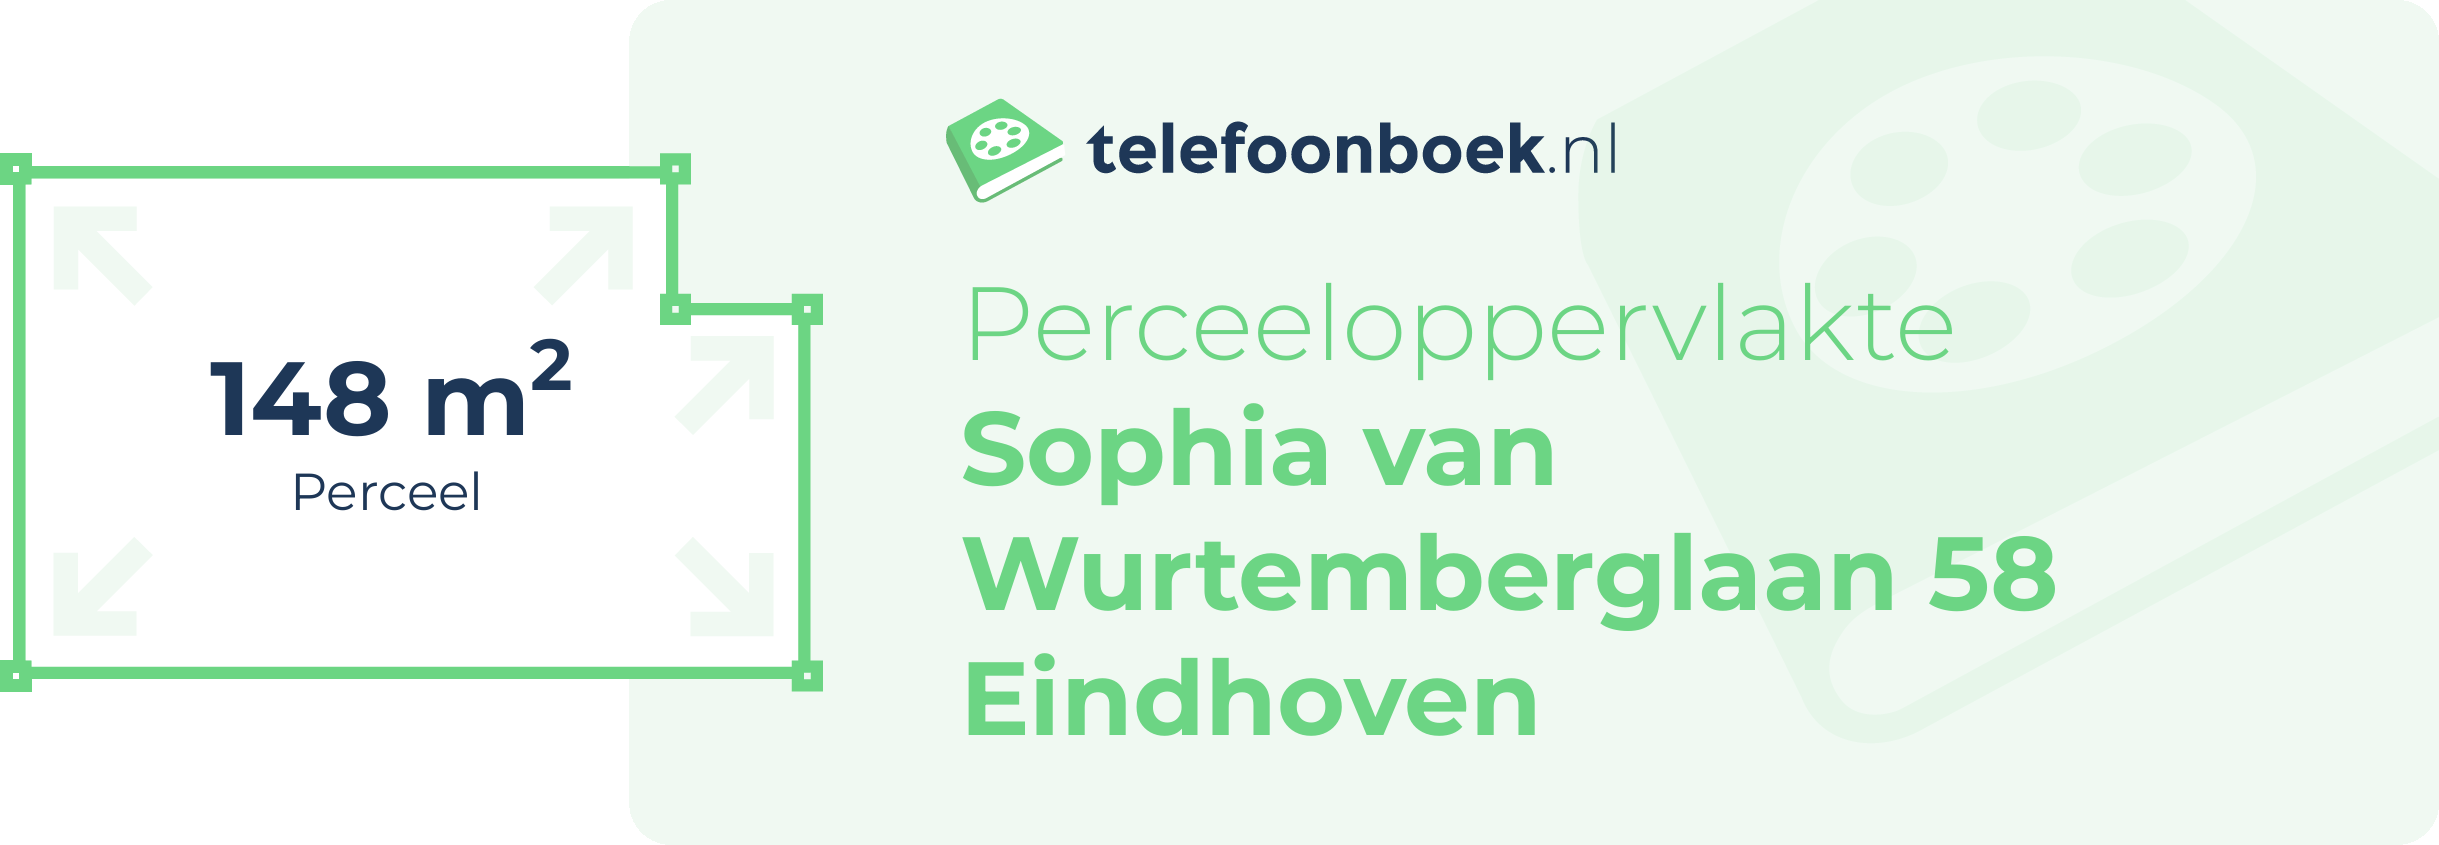 Perceeloppervlakte Sophia Van Wurtemberglaan 58 Eindhoven